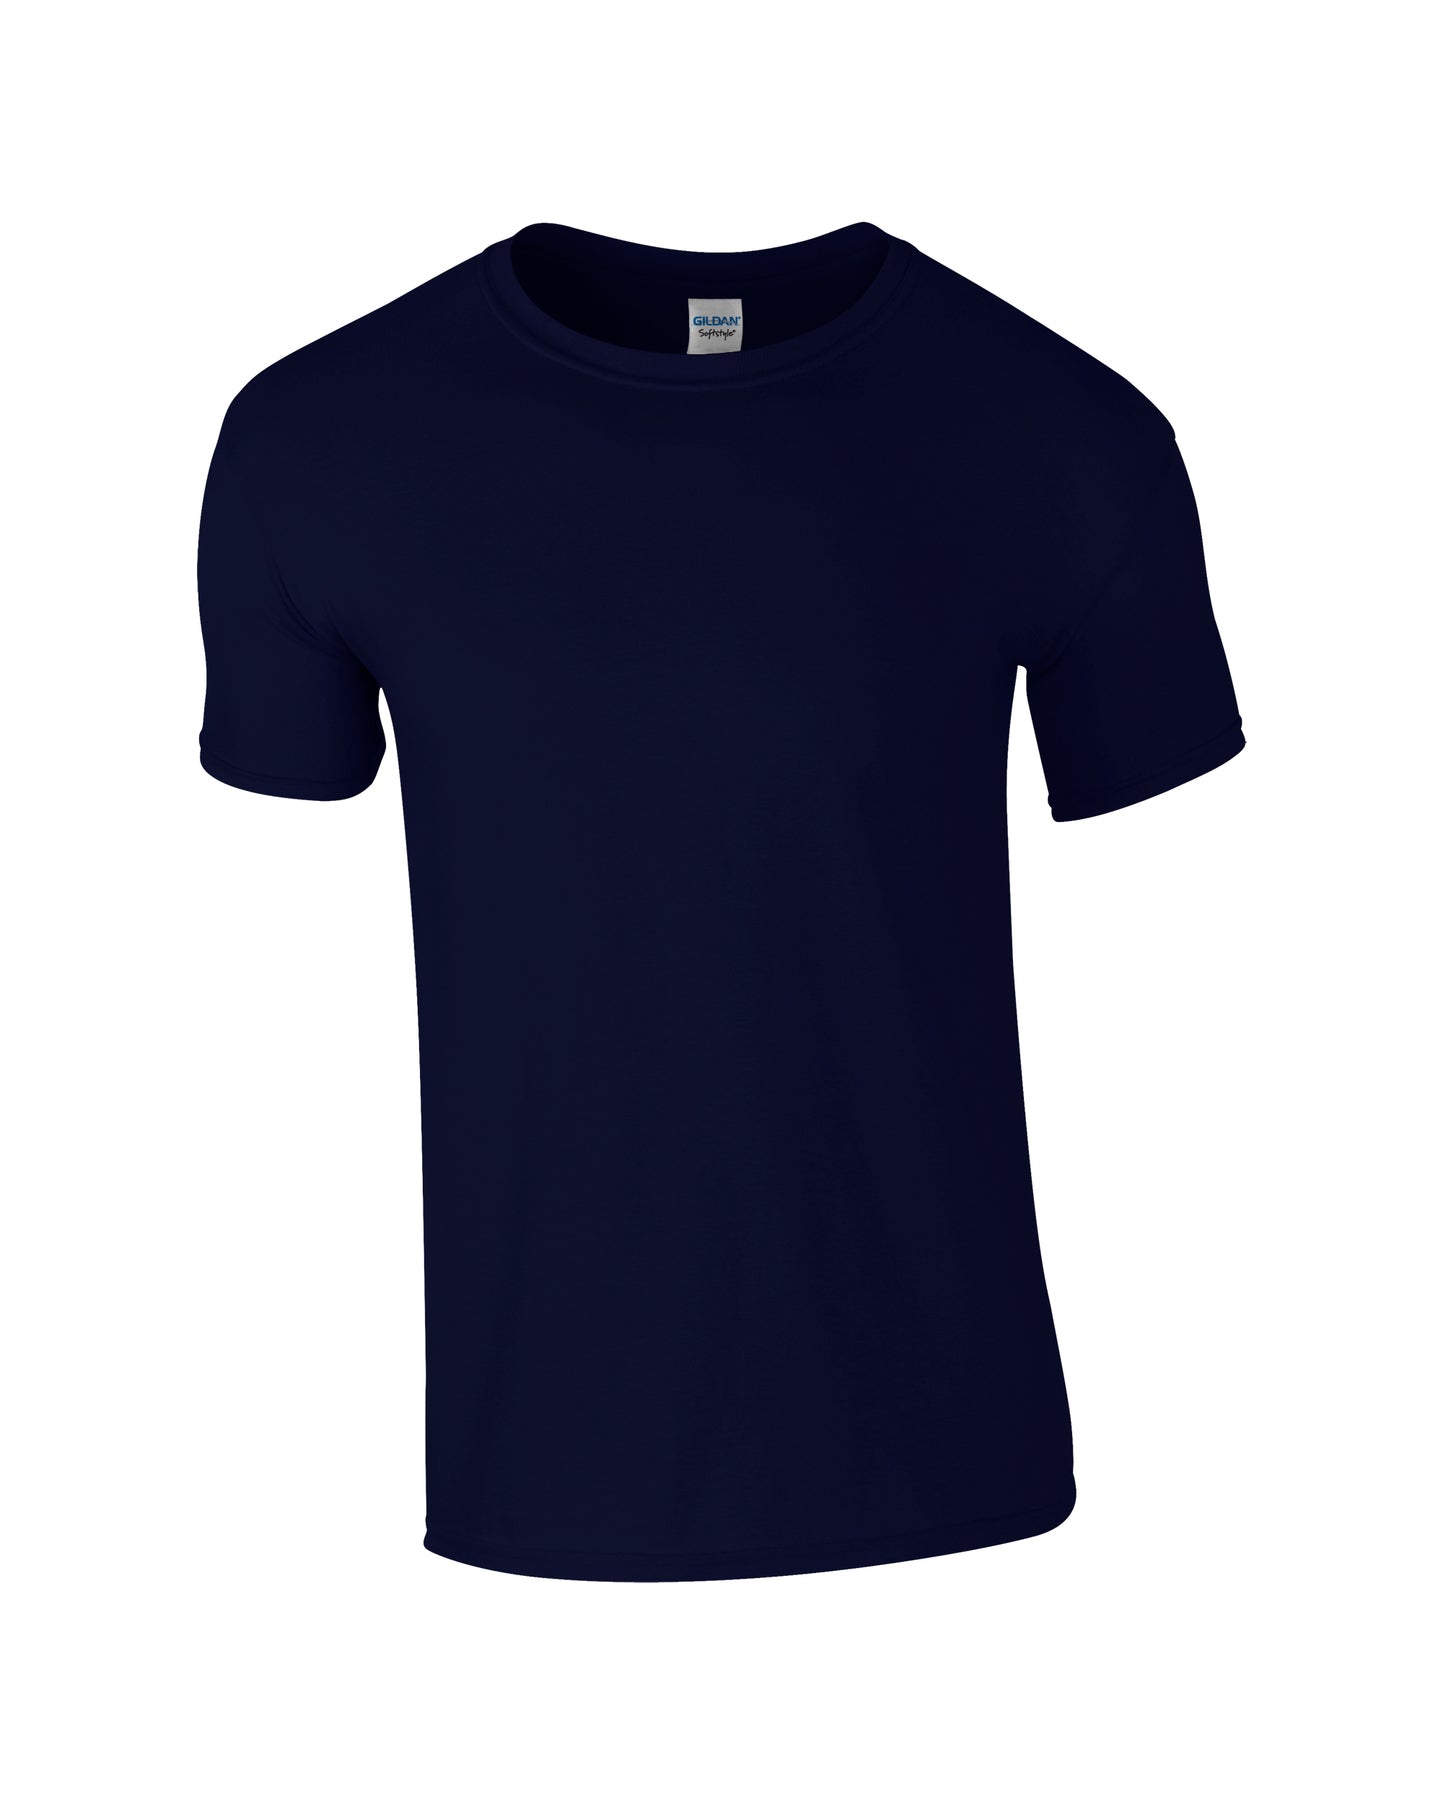 Maglietta T-shirt Uomo da Lavoro Leggera Cotone Manica Corta Workwear